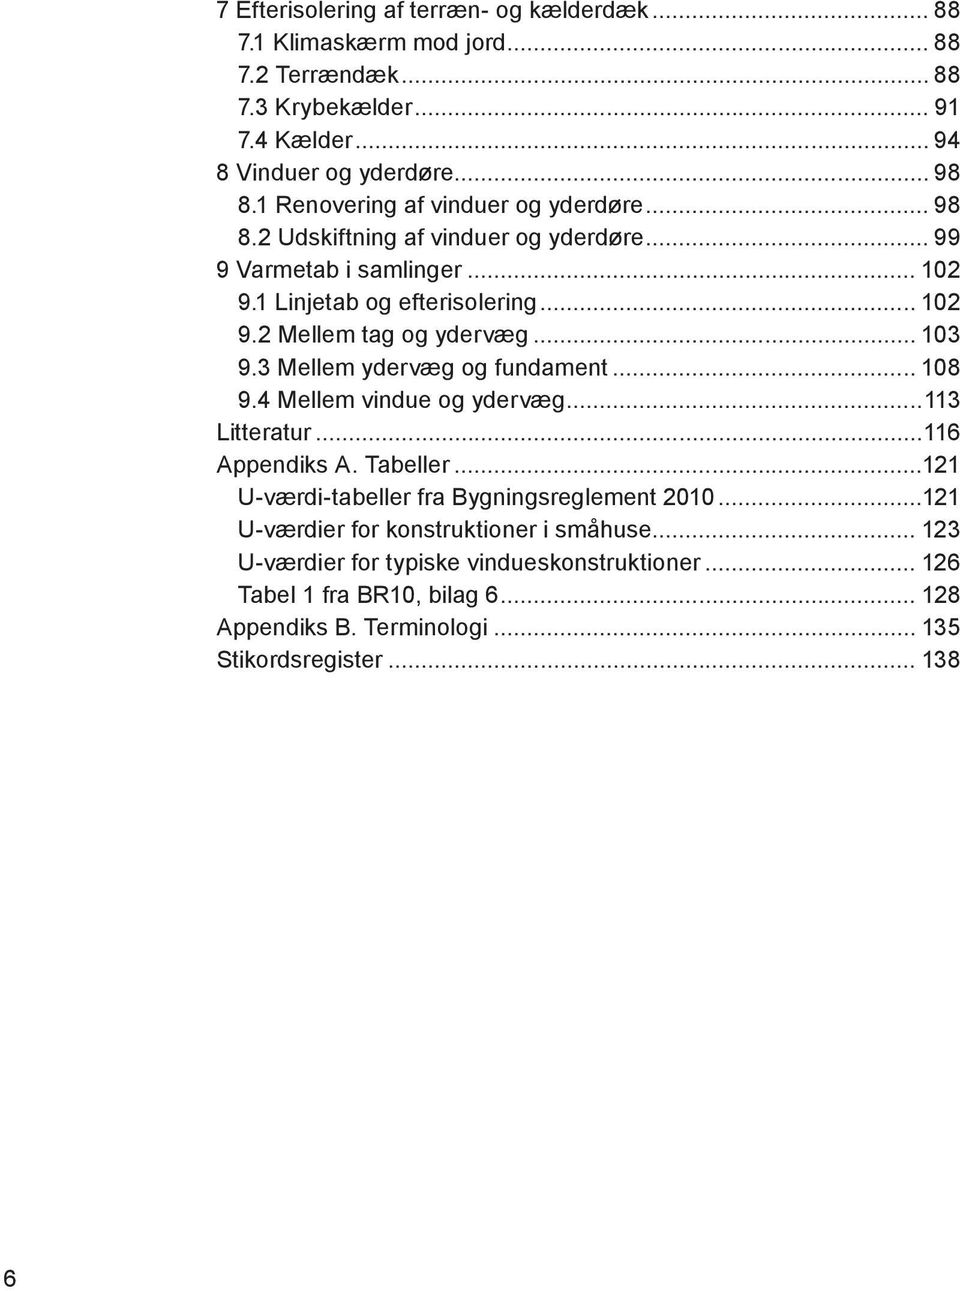 .. 103 9.3 Mellem ydervæg og fundament... 108 9.4 Mellem vindue og ydervæg...113 Litteratur...116 Appendiks A. Tabeller...121 U-værdi-tabeller fra Bygningsreglement 2010.